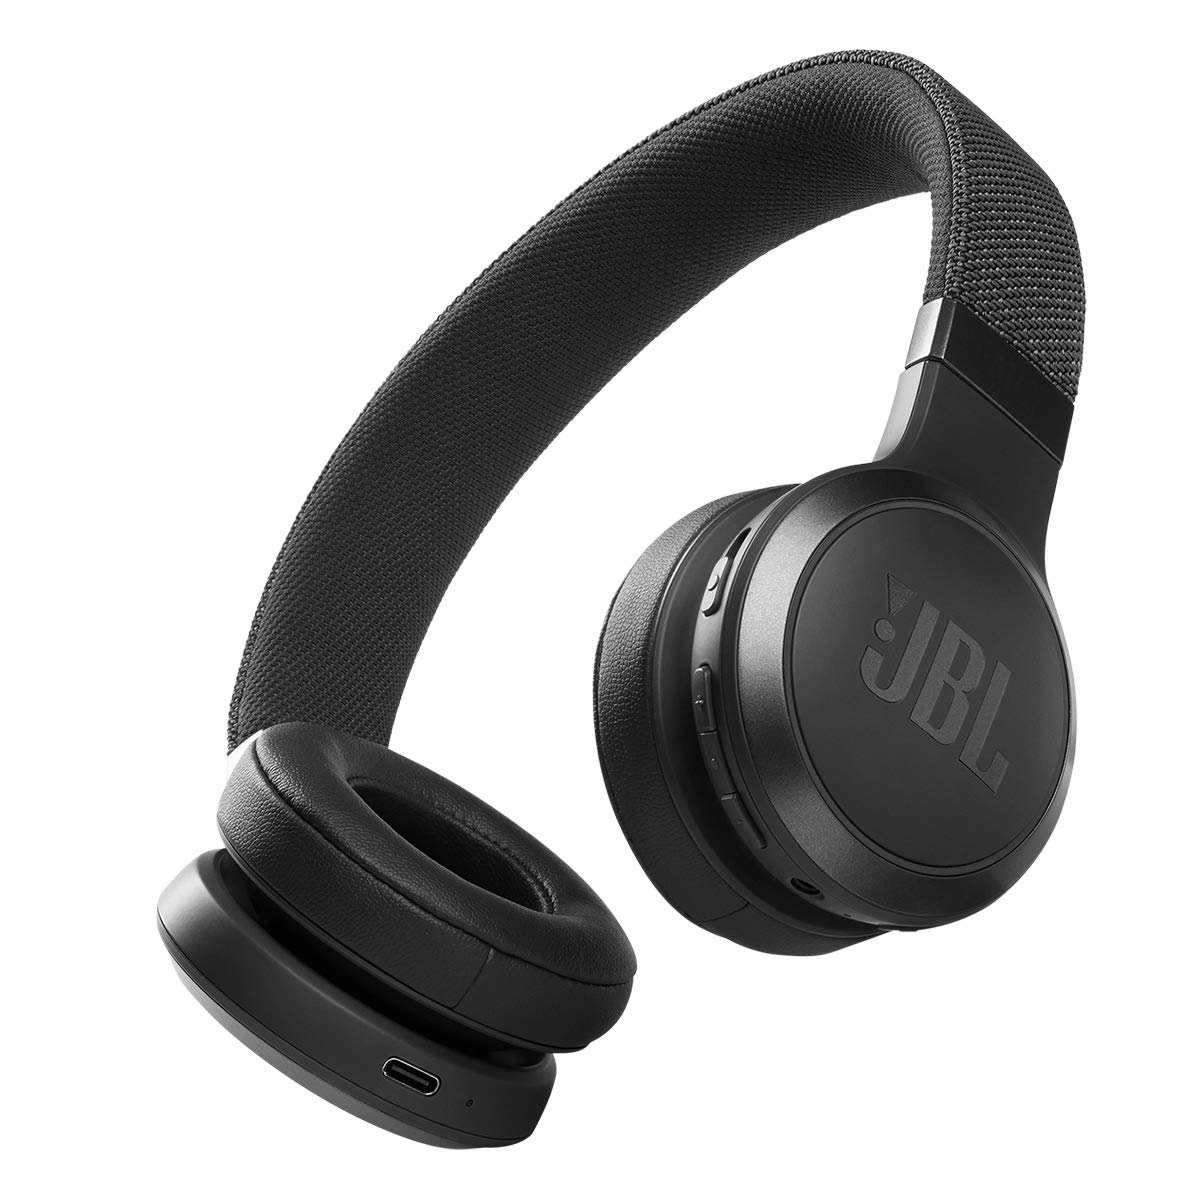 JBL Live 460NC - 배터리 수명이 길고 음성 지원 제어 기능이 있는 무선 온이어 노이즈 캔슬링 헤드폰 - 블랙